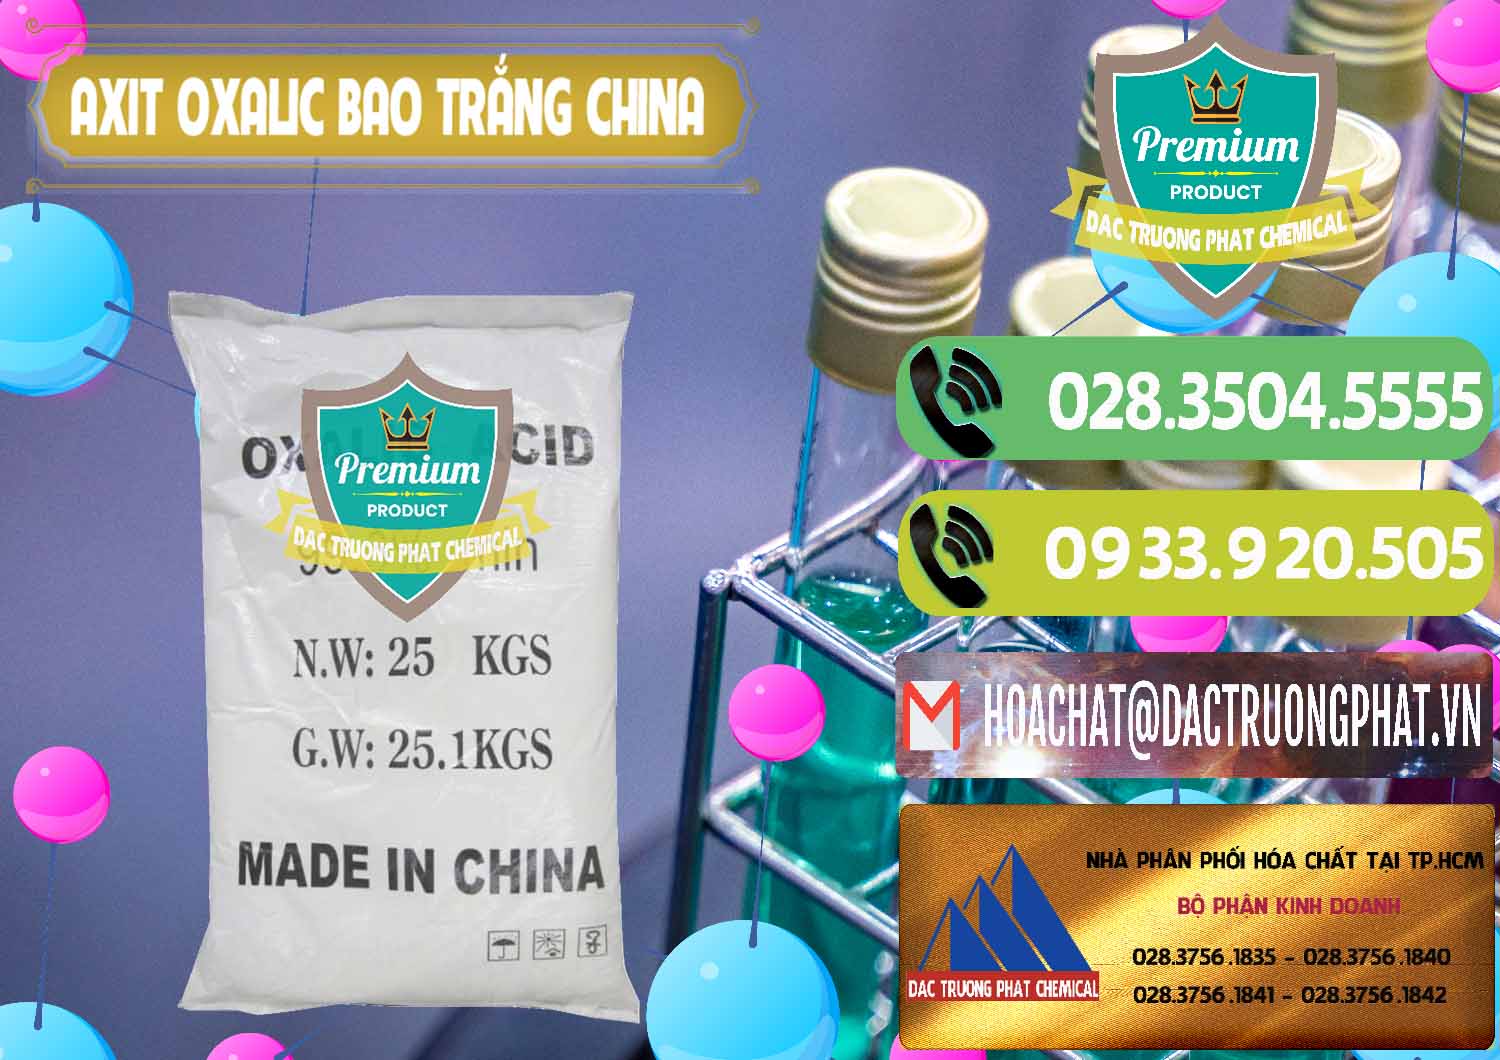 Cty phân phối ( bán ) Acid Oxalic – Axit Oxalic 99.6% Bao Trắng Trung Quốc China - 0270 - Chuyên phân phối _ cung ứng hóa chất tại TP.HCM - hoachatmientay.vn